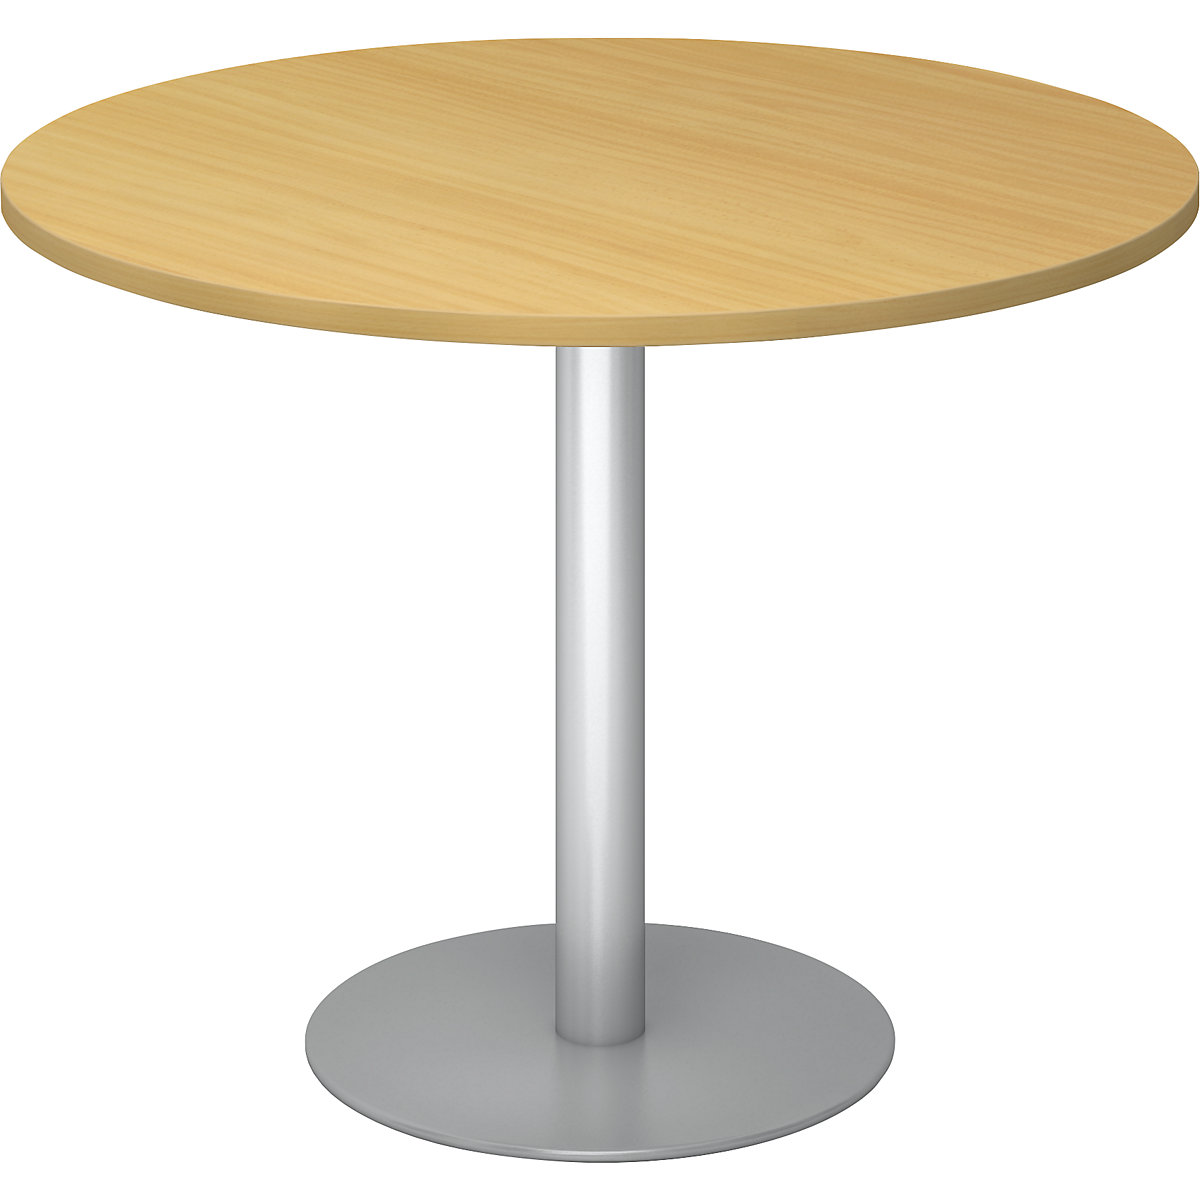 Jednací stůl, Ø 1000 mm, výška 755 mm, stříbrný podstavec, deska bukový dekor